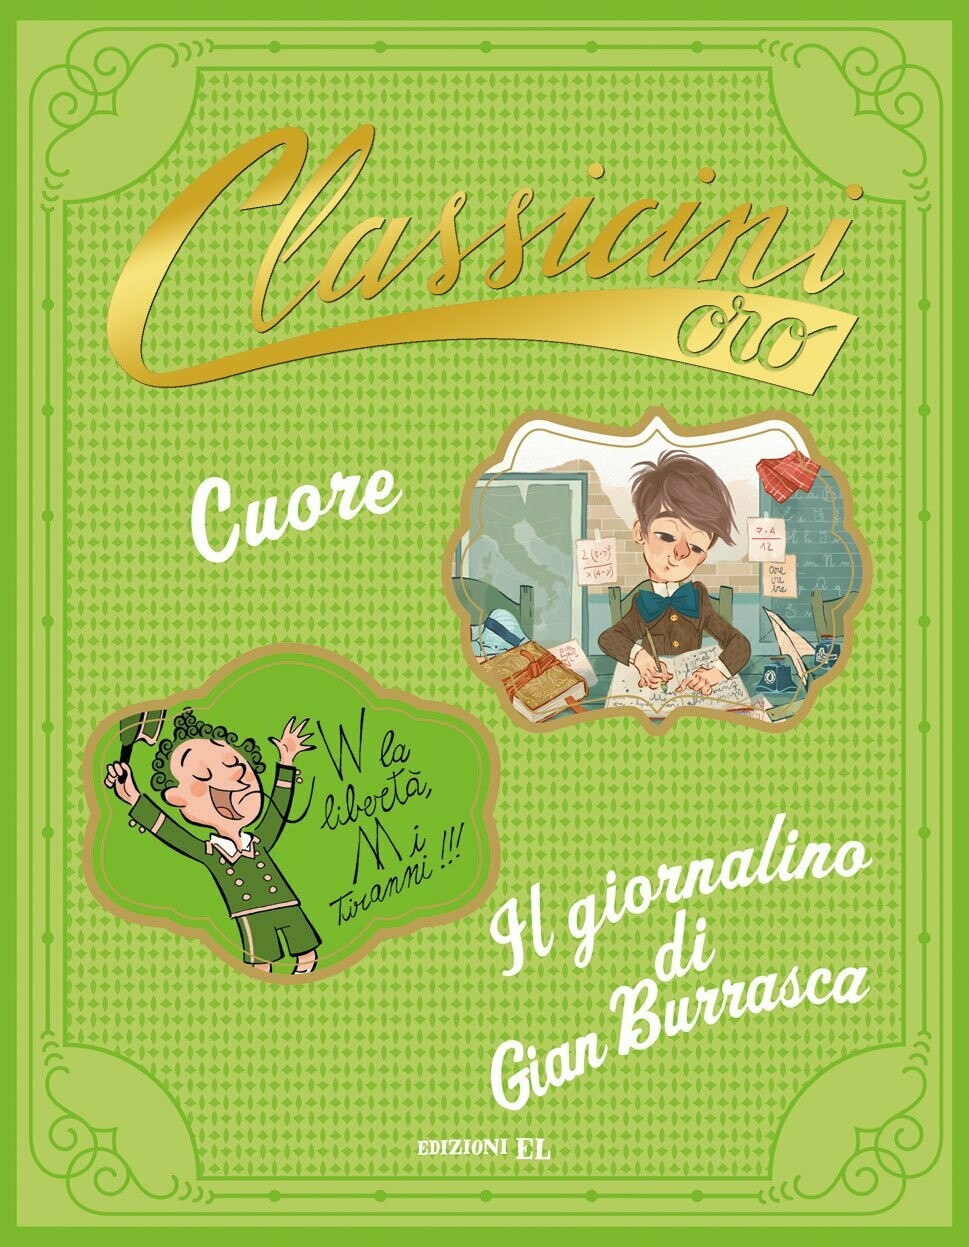 Cuore - Il giornalino di Gian Burrasca. Classicini